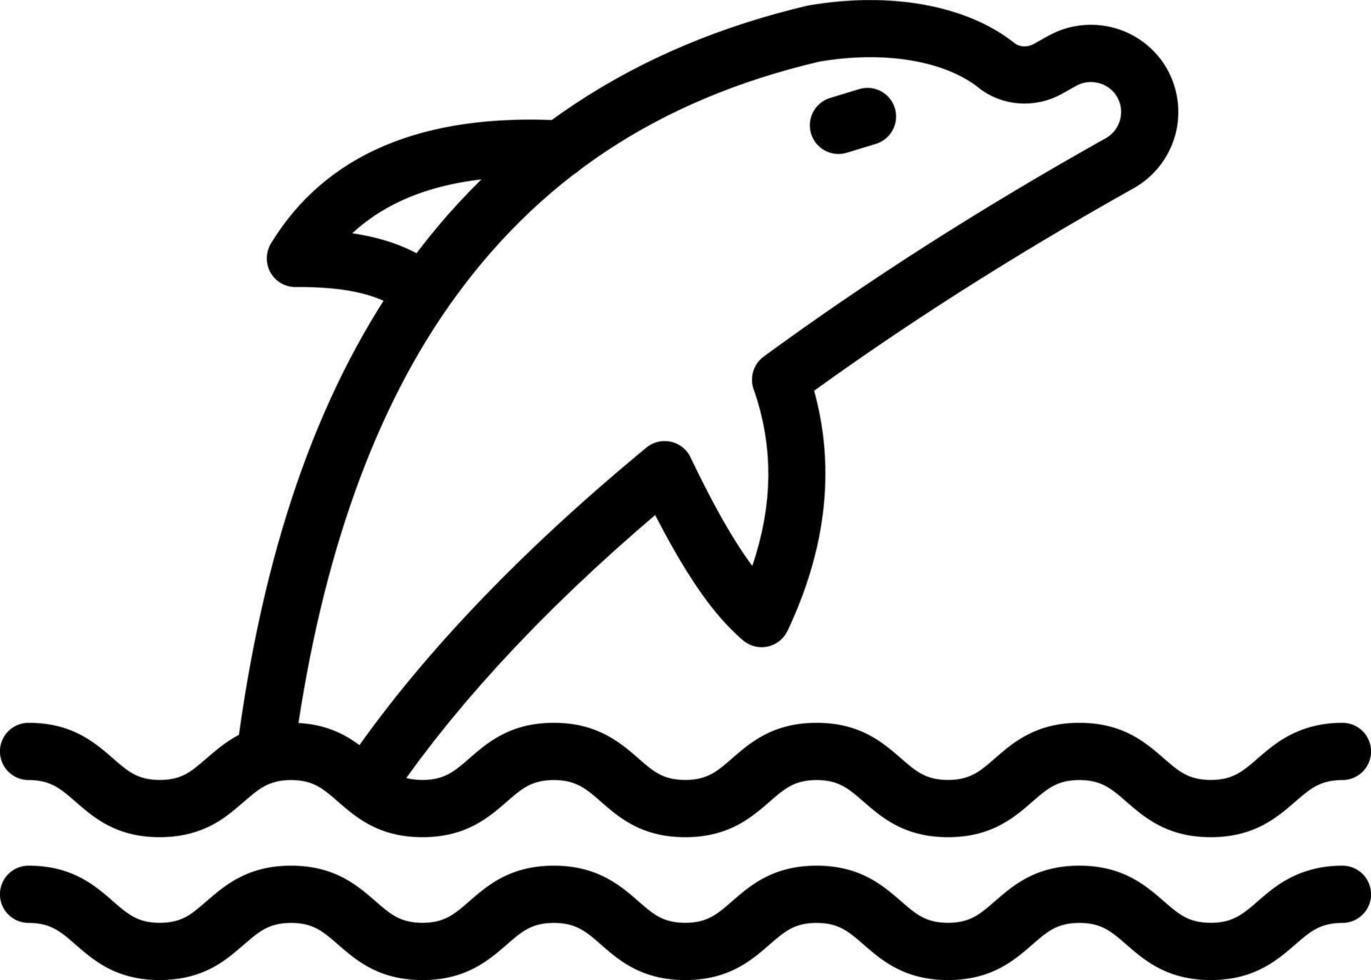 whale vektor illustration på en bakgrund. premium kvalitet symbols.vector ikoner för koncept och grafisk design.